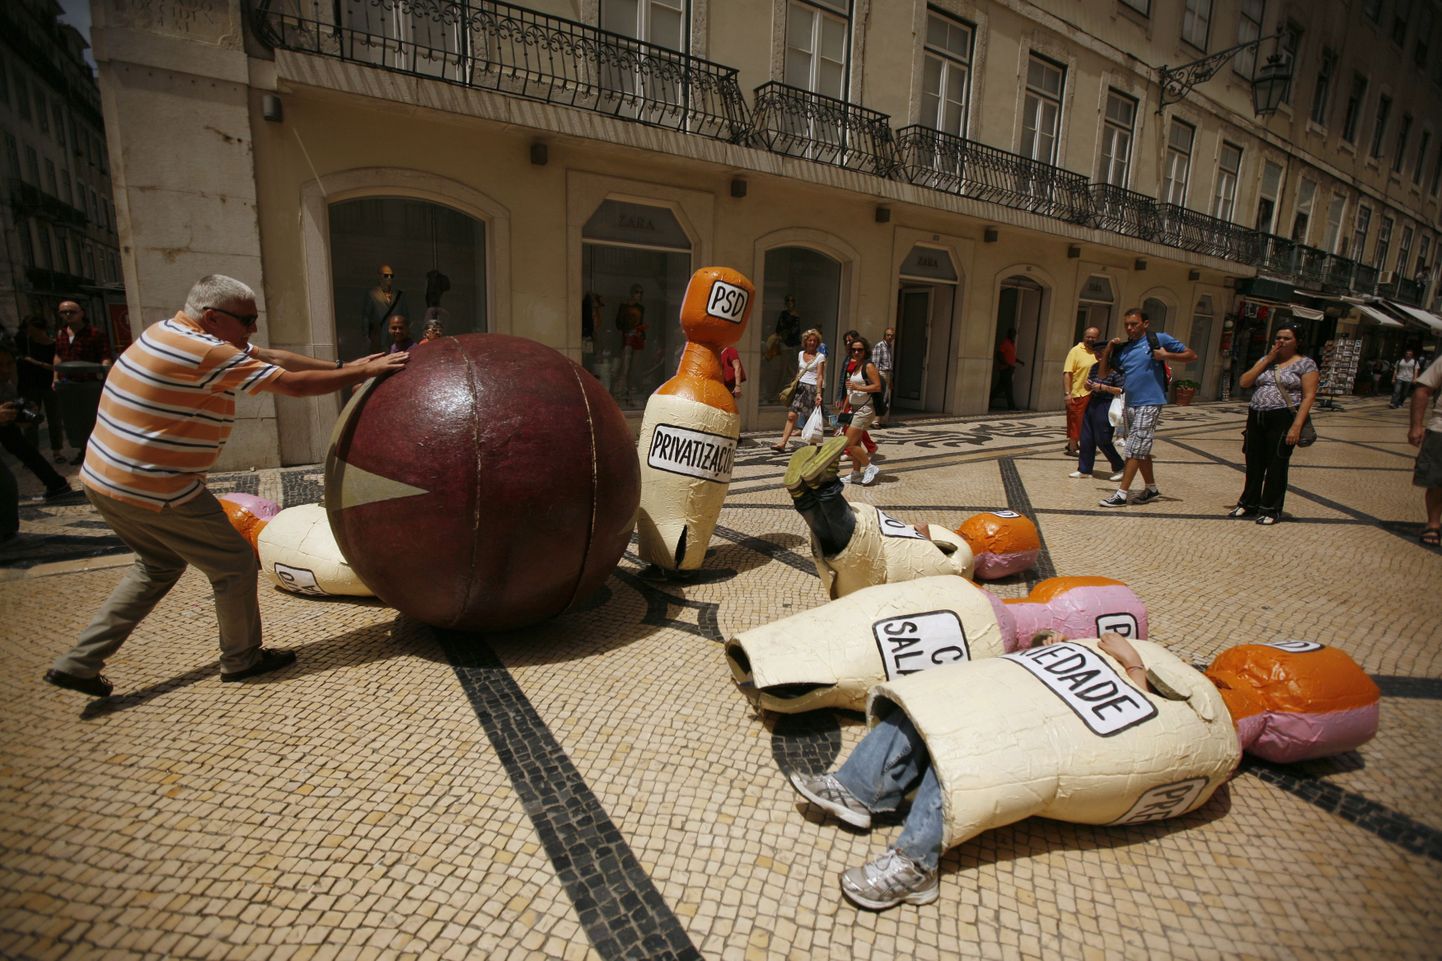 Португальцы протестуют против политики МВФ и европейских институтов власти, которую символизирует шар для боулинга. В роли кеглей, естественно, португальцы и их проблемы.